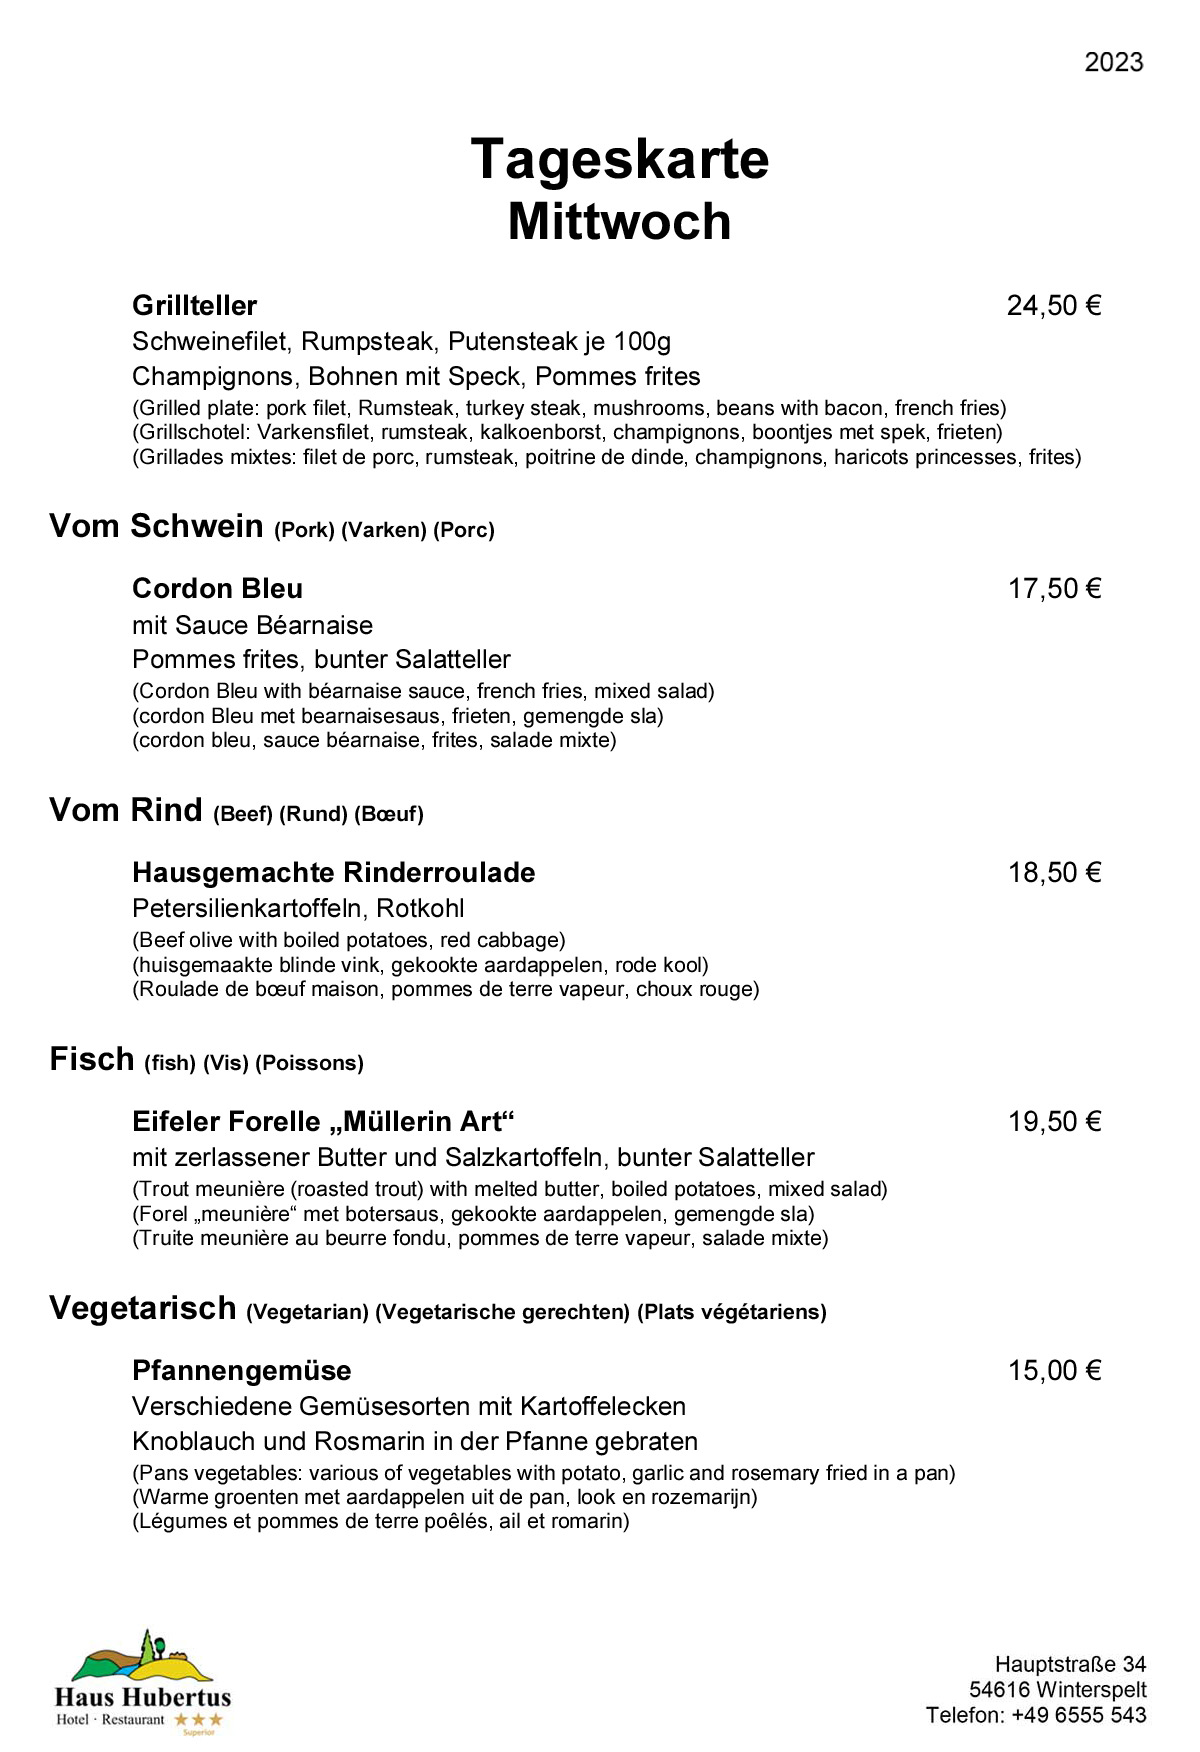 Hotel - Restaurant Haus Hubertus - Menu 02/2023 - Daily menu / Wednesday